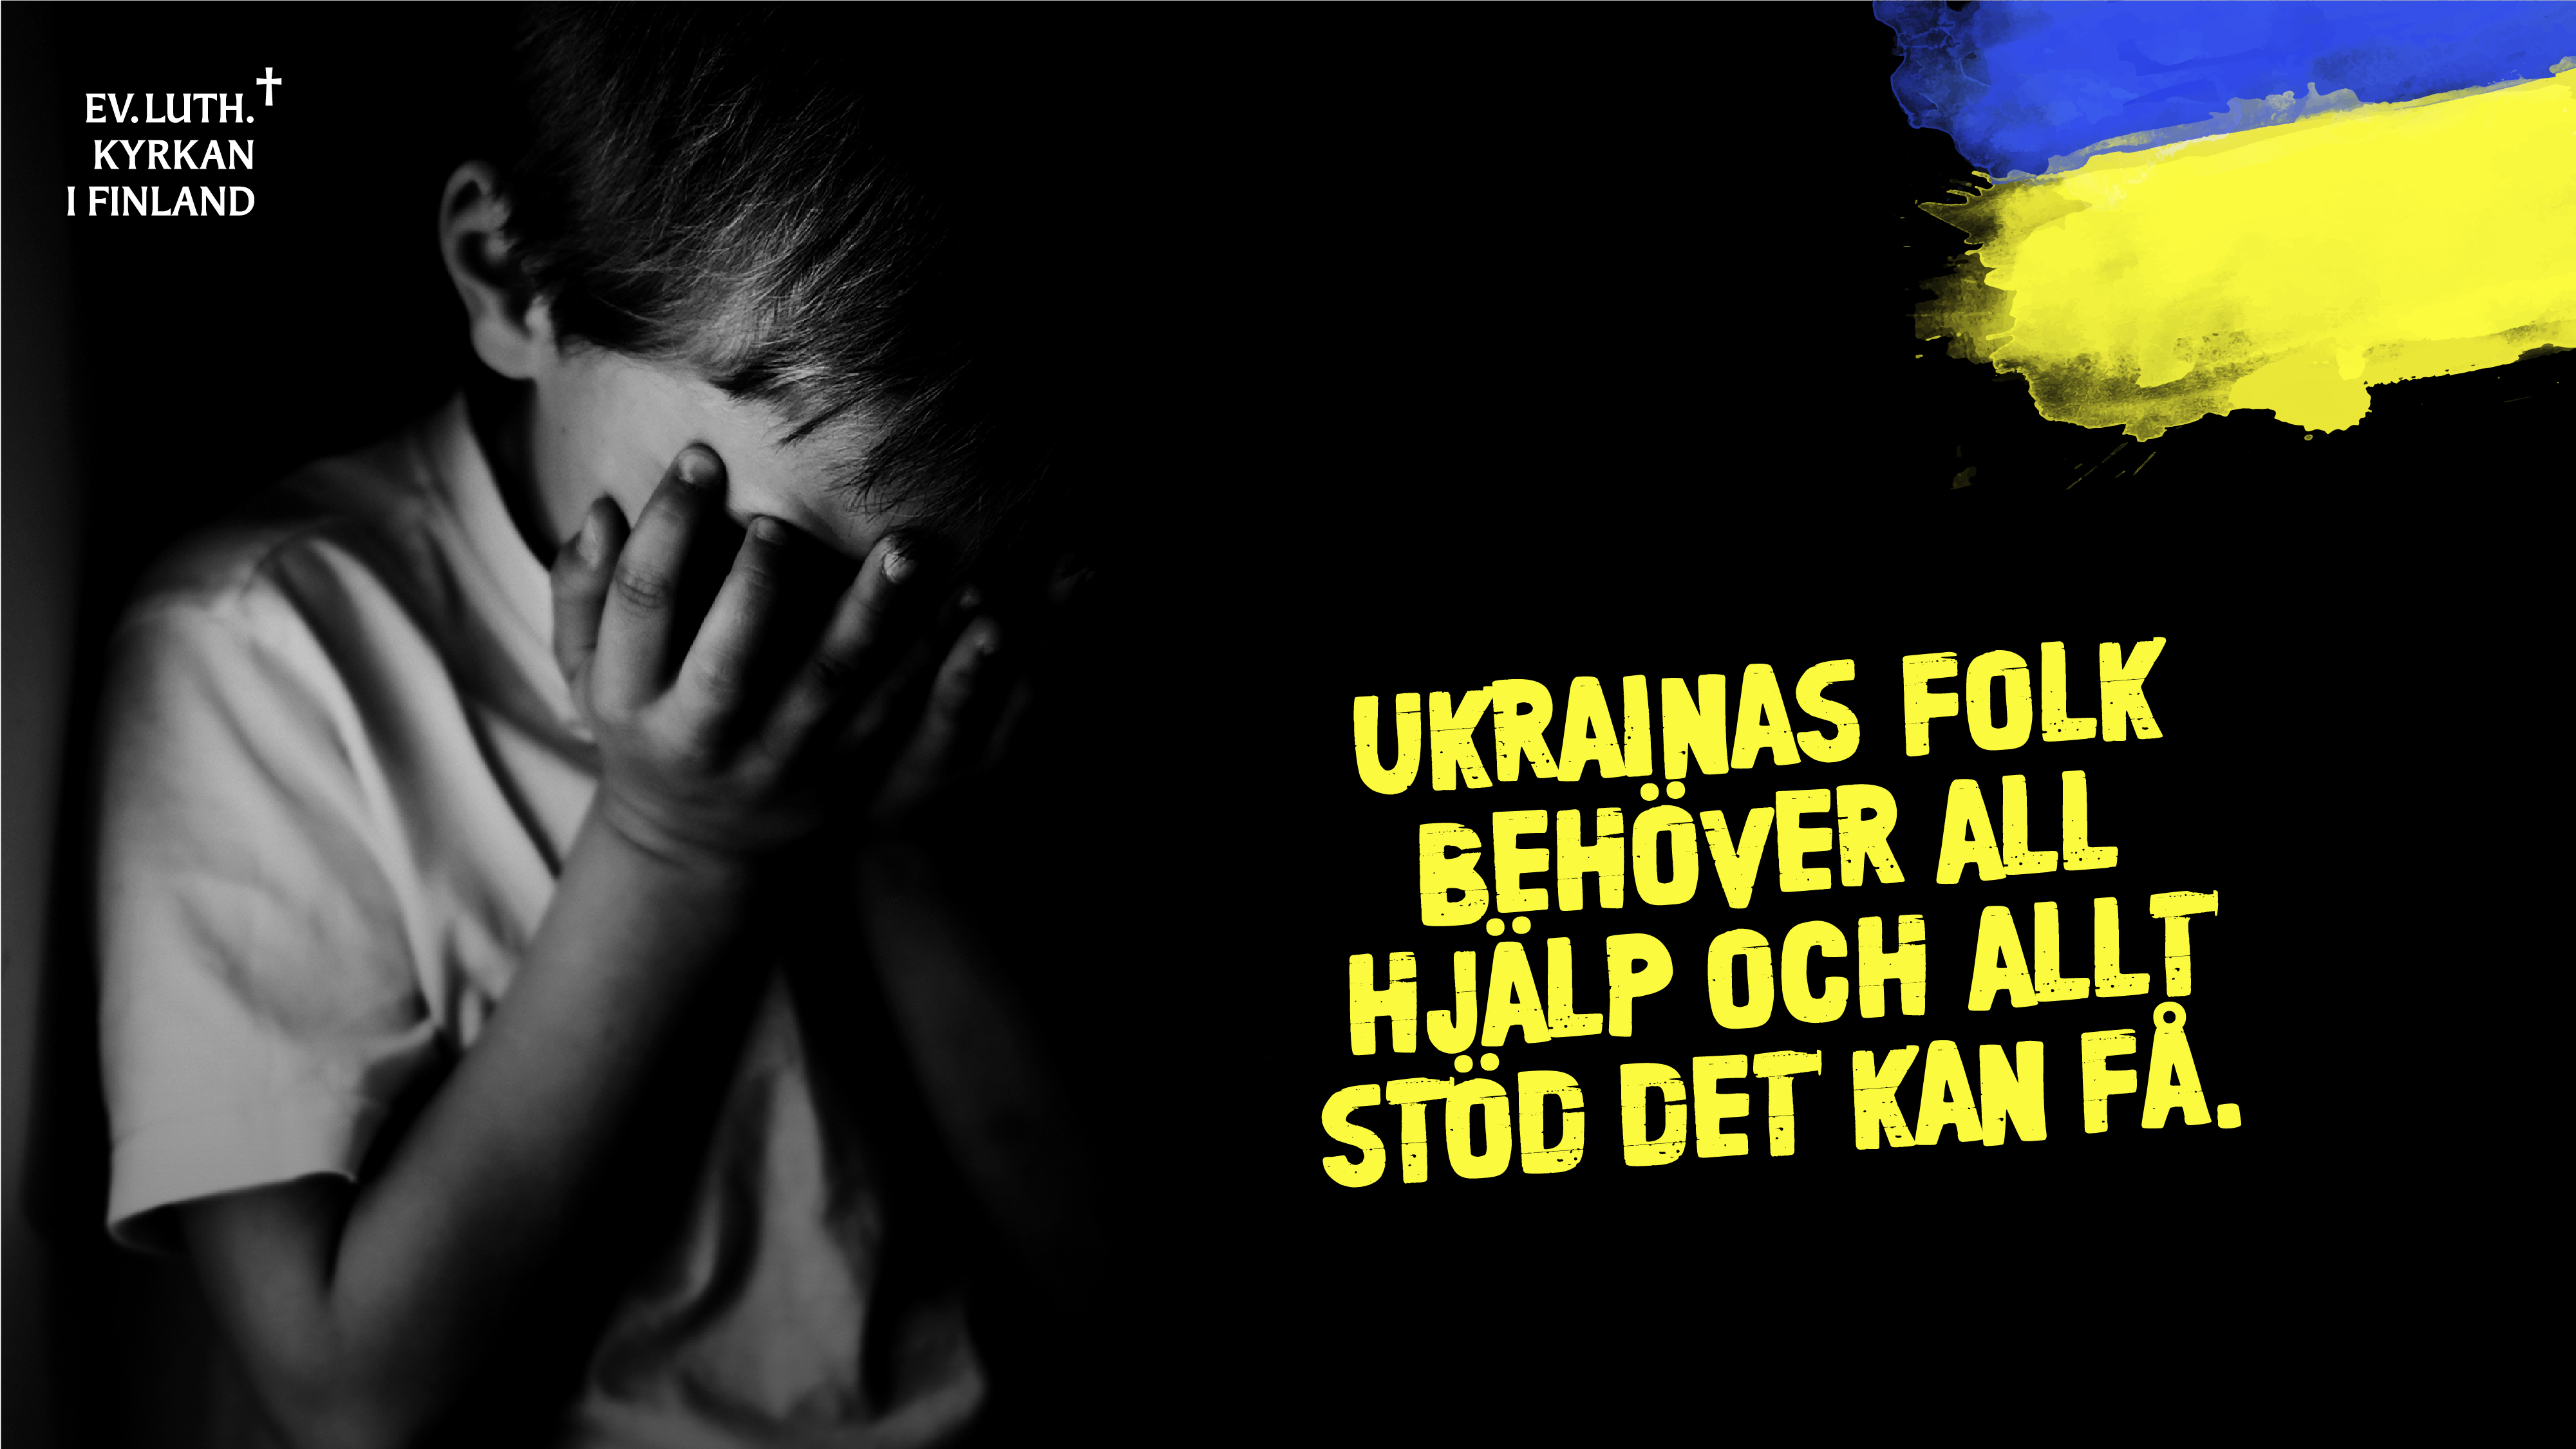 Barn som gårter. text: Ukrainas folk behöver all hjälp och allt stöd det kan få. Ev.luth. kyrkan i Finalnd.